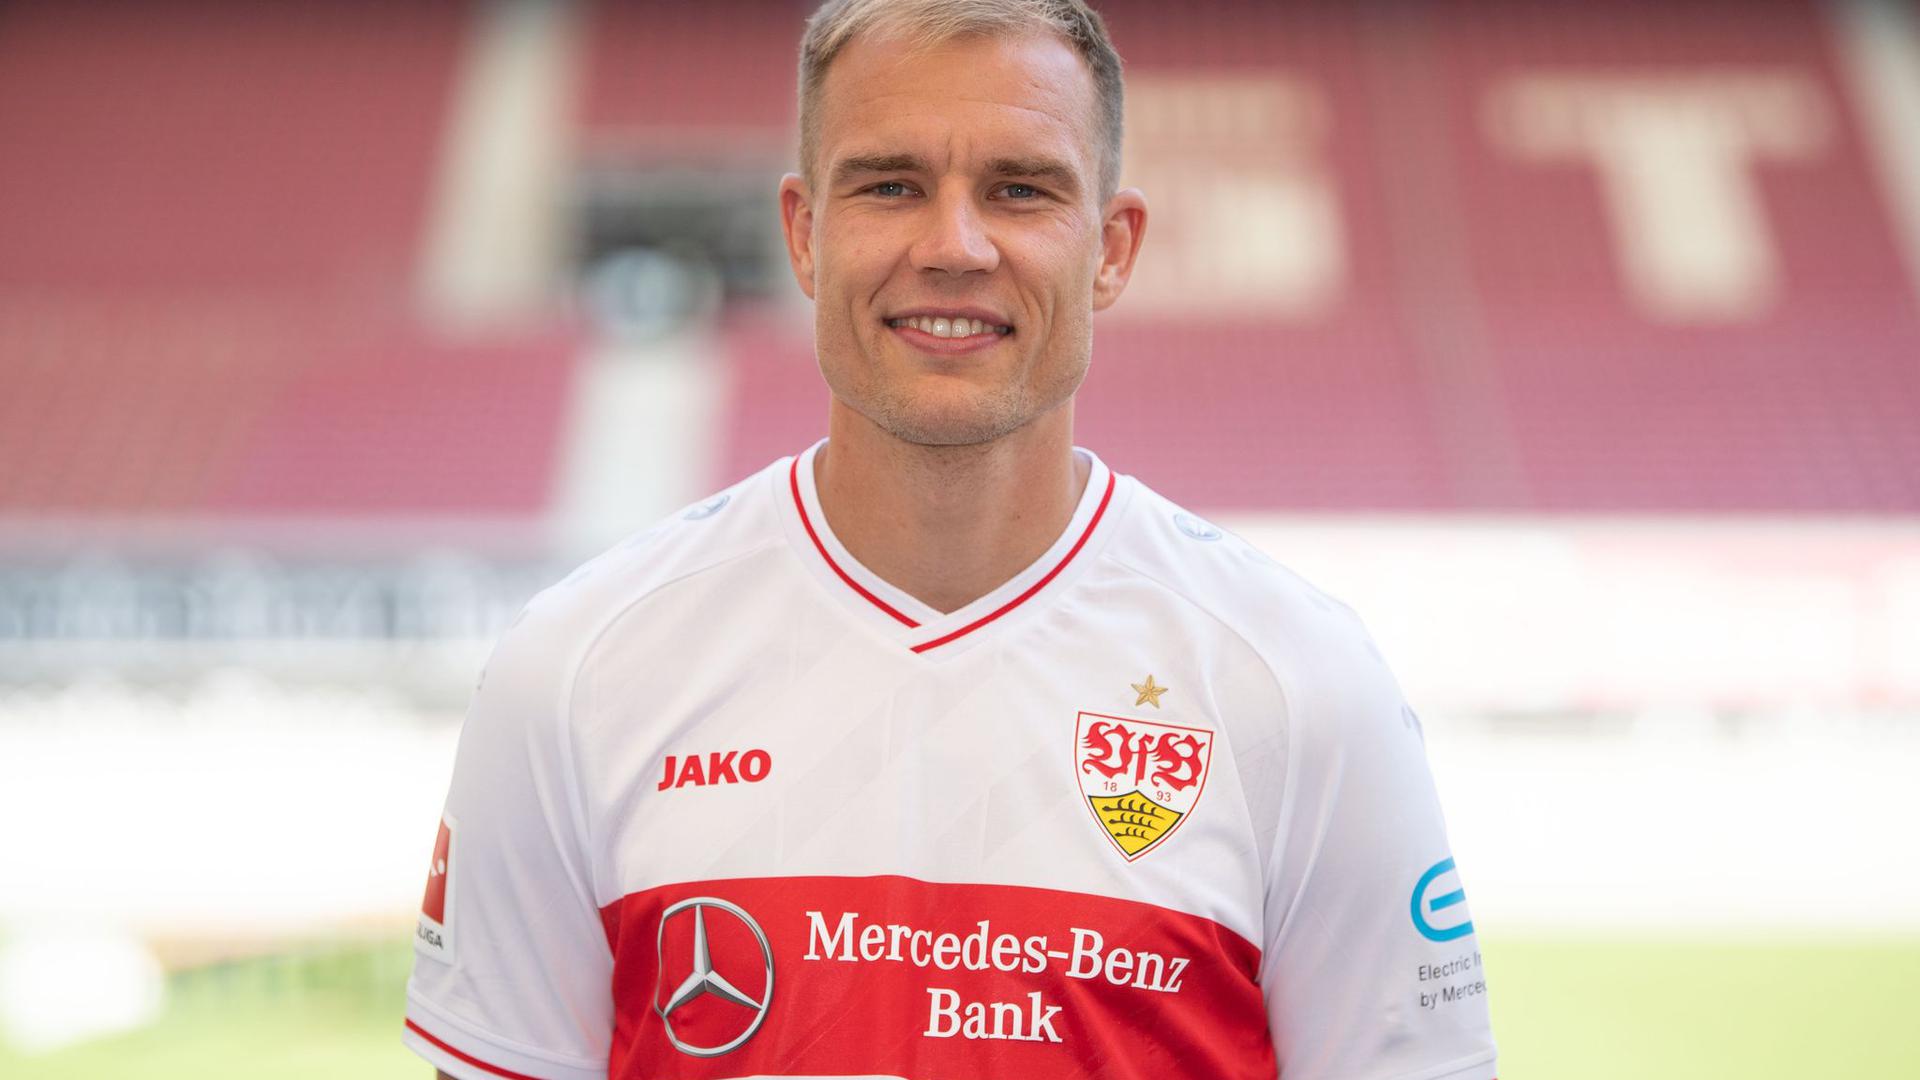 Holger Badstuber trainiert nicht mehr mit den VfB-Profis.